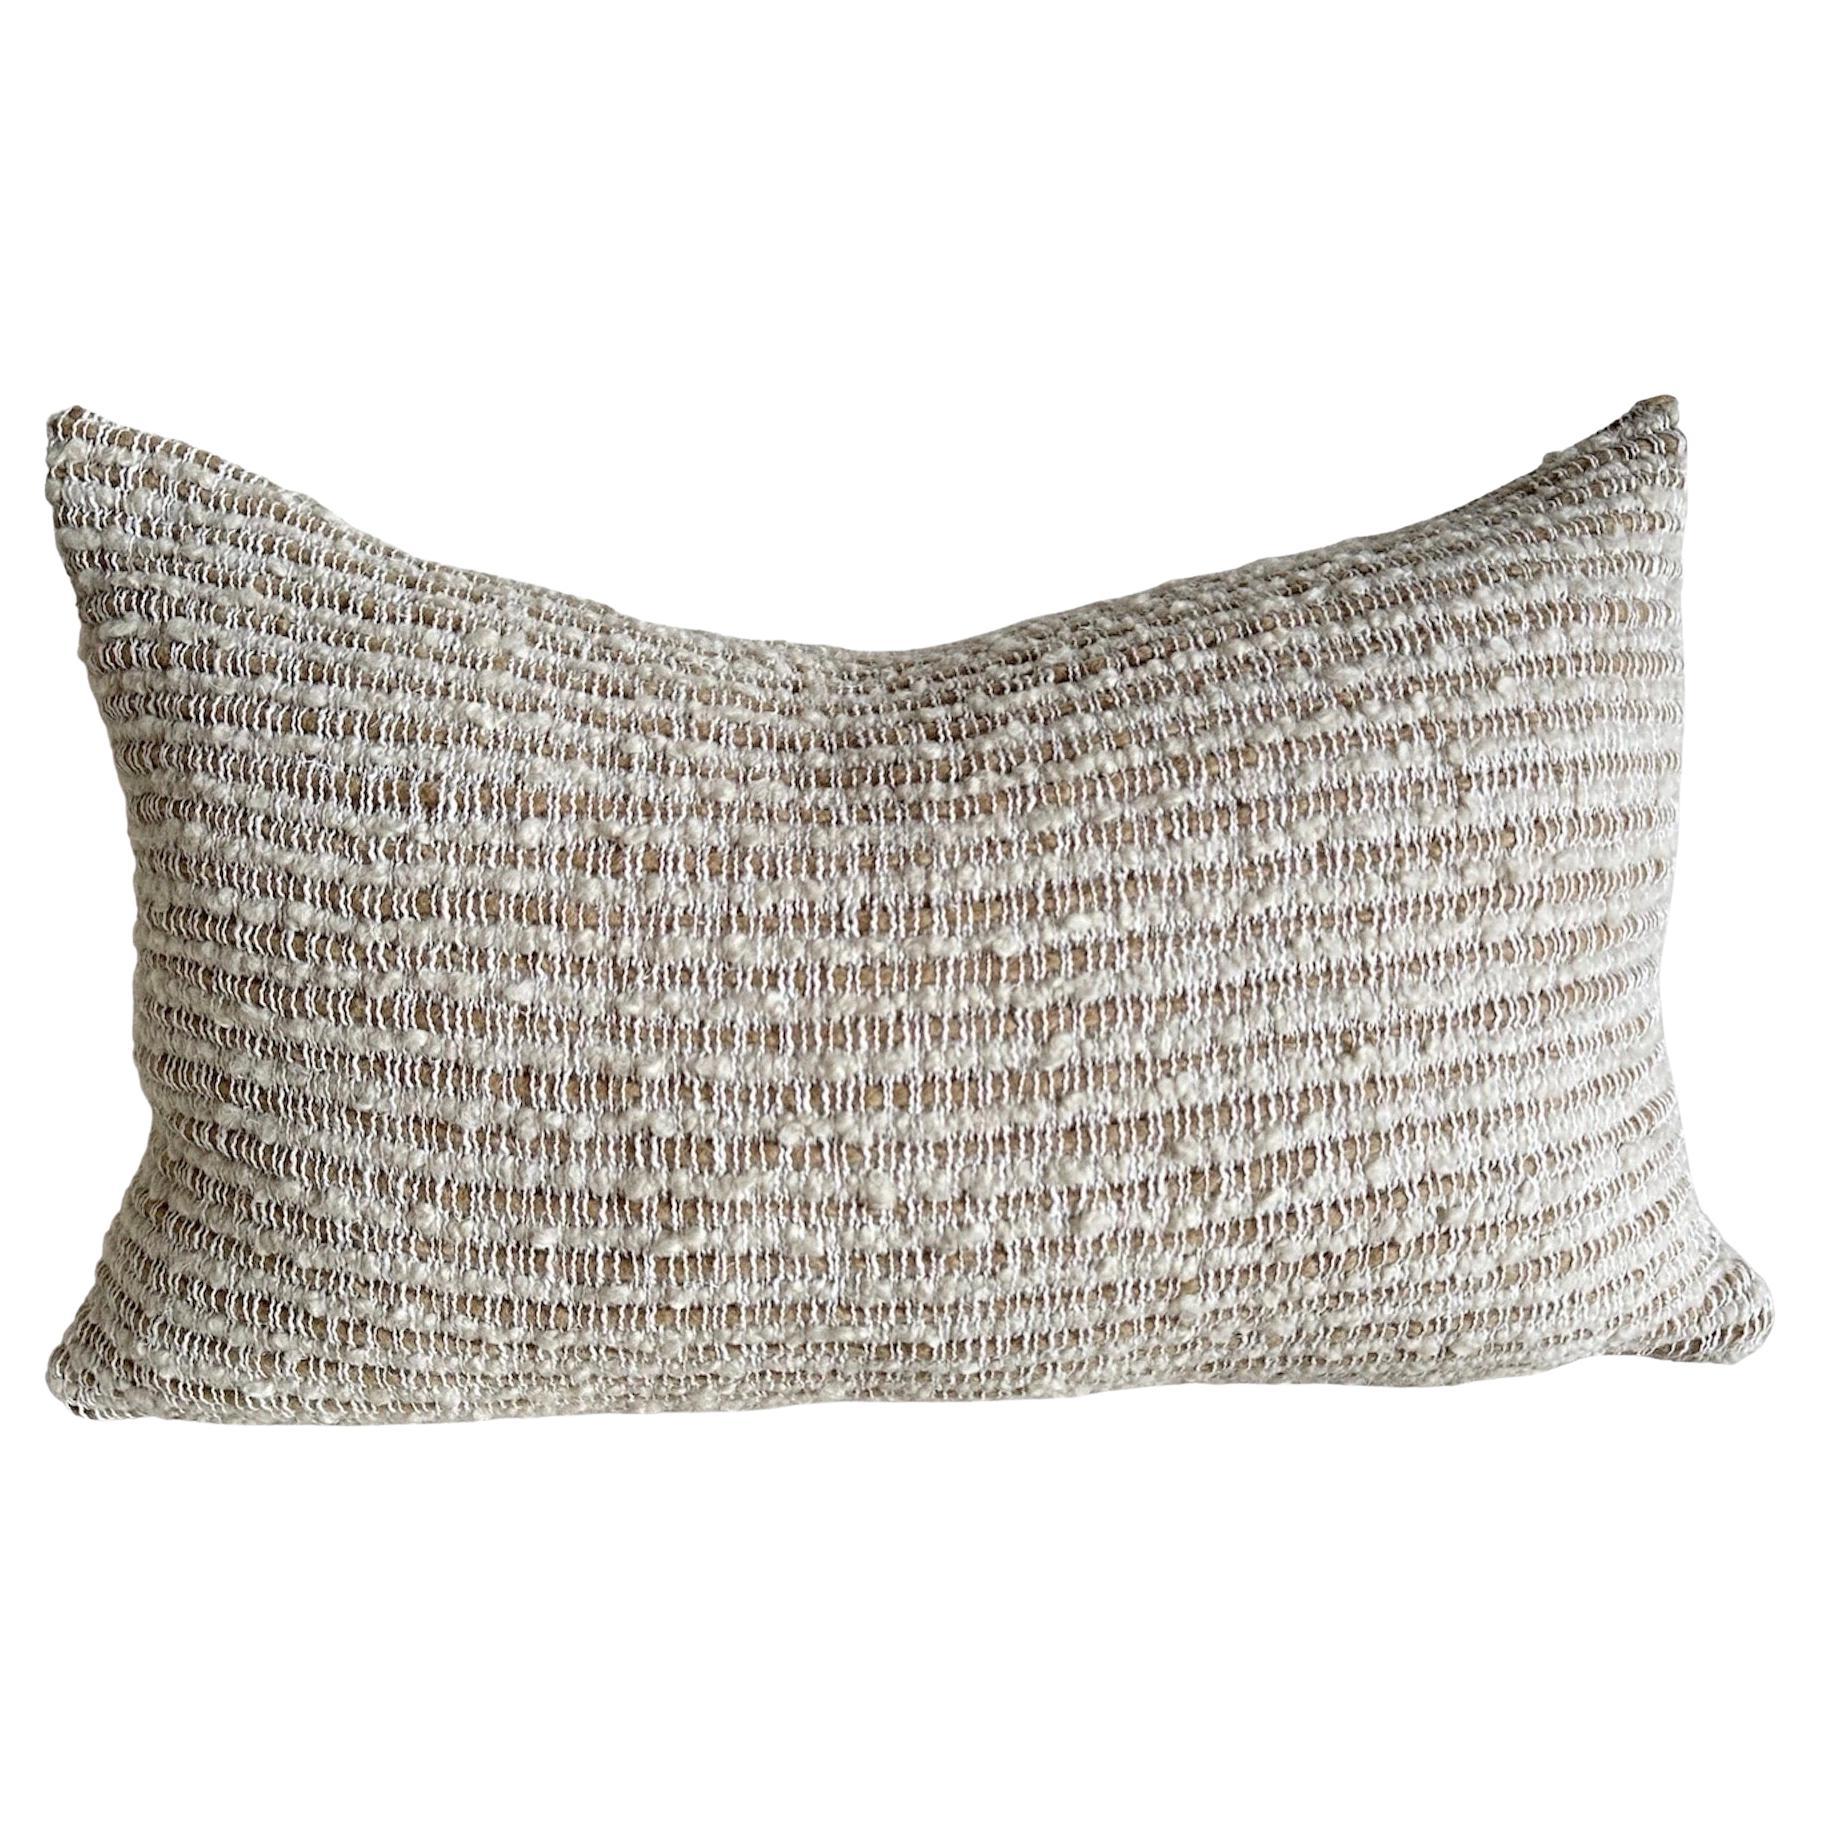 Textured Wool and Linen Lumbar Pillow